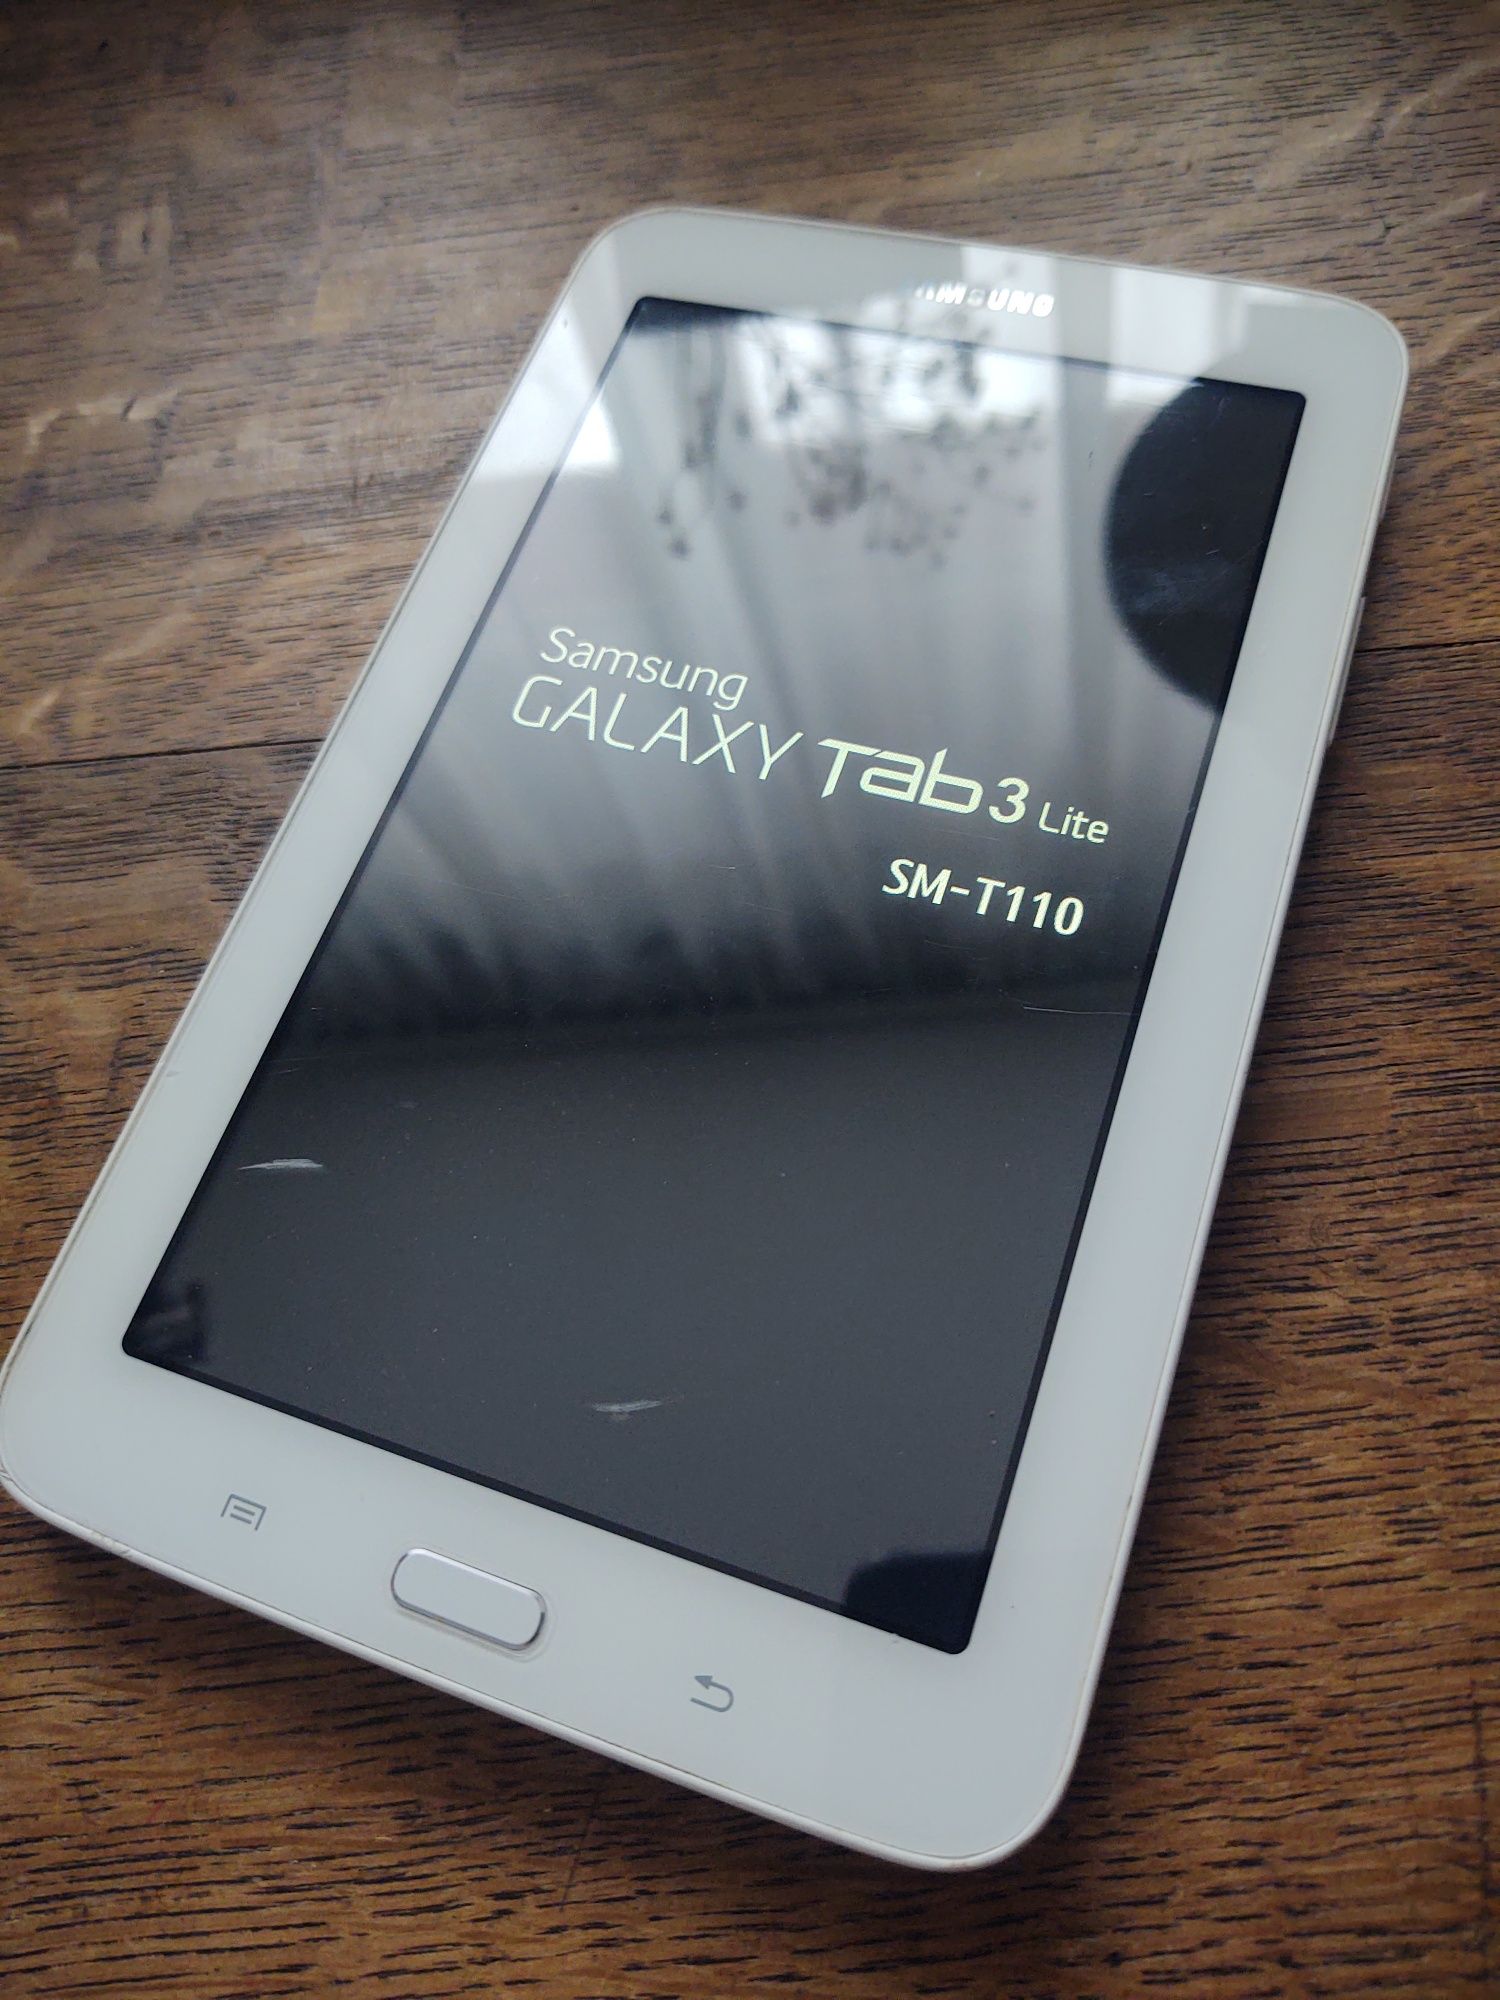 tablet Samsung tab3 lite sm-t110